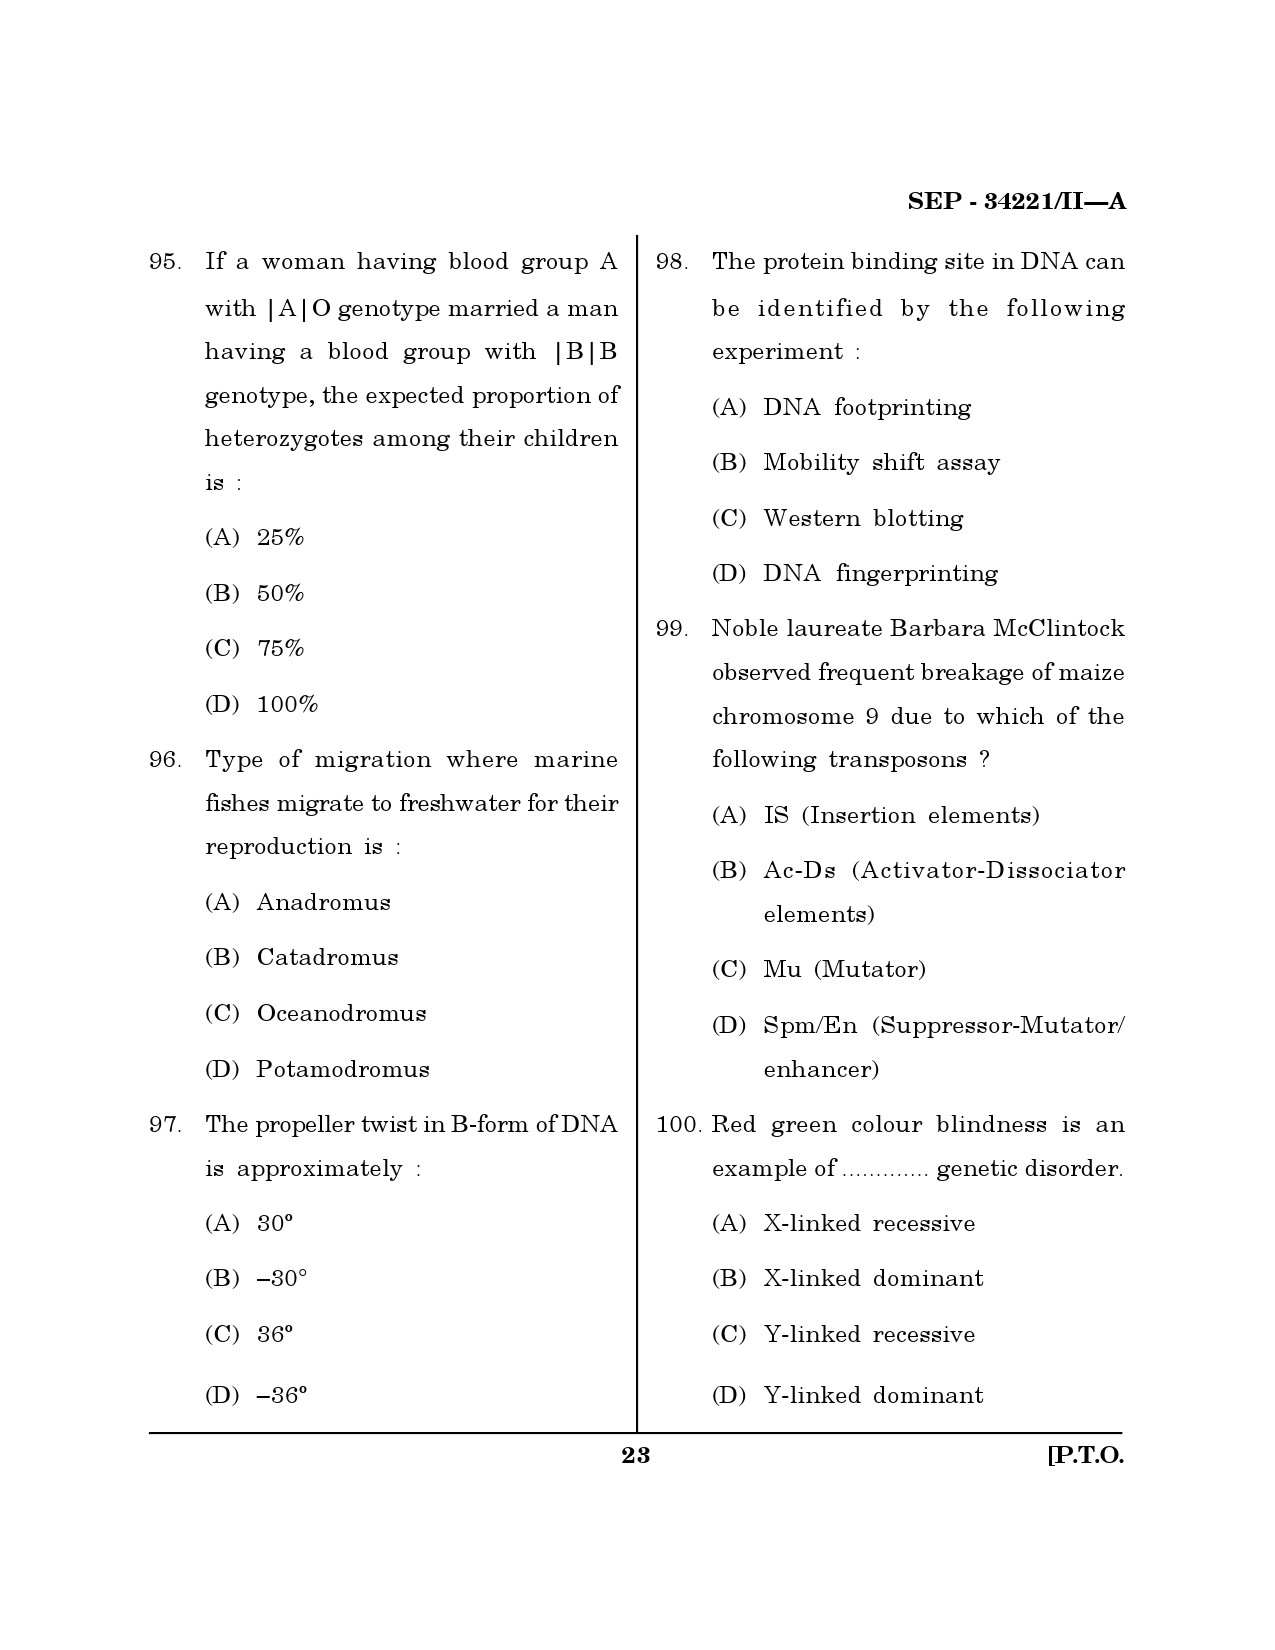 Maharashtra SET Life Sciences Exam Question Paper September 2021 22